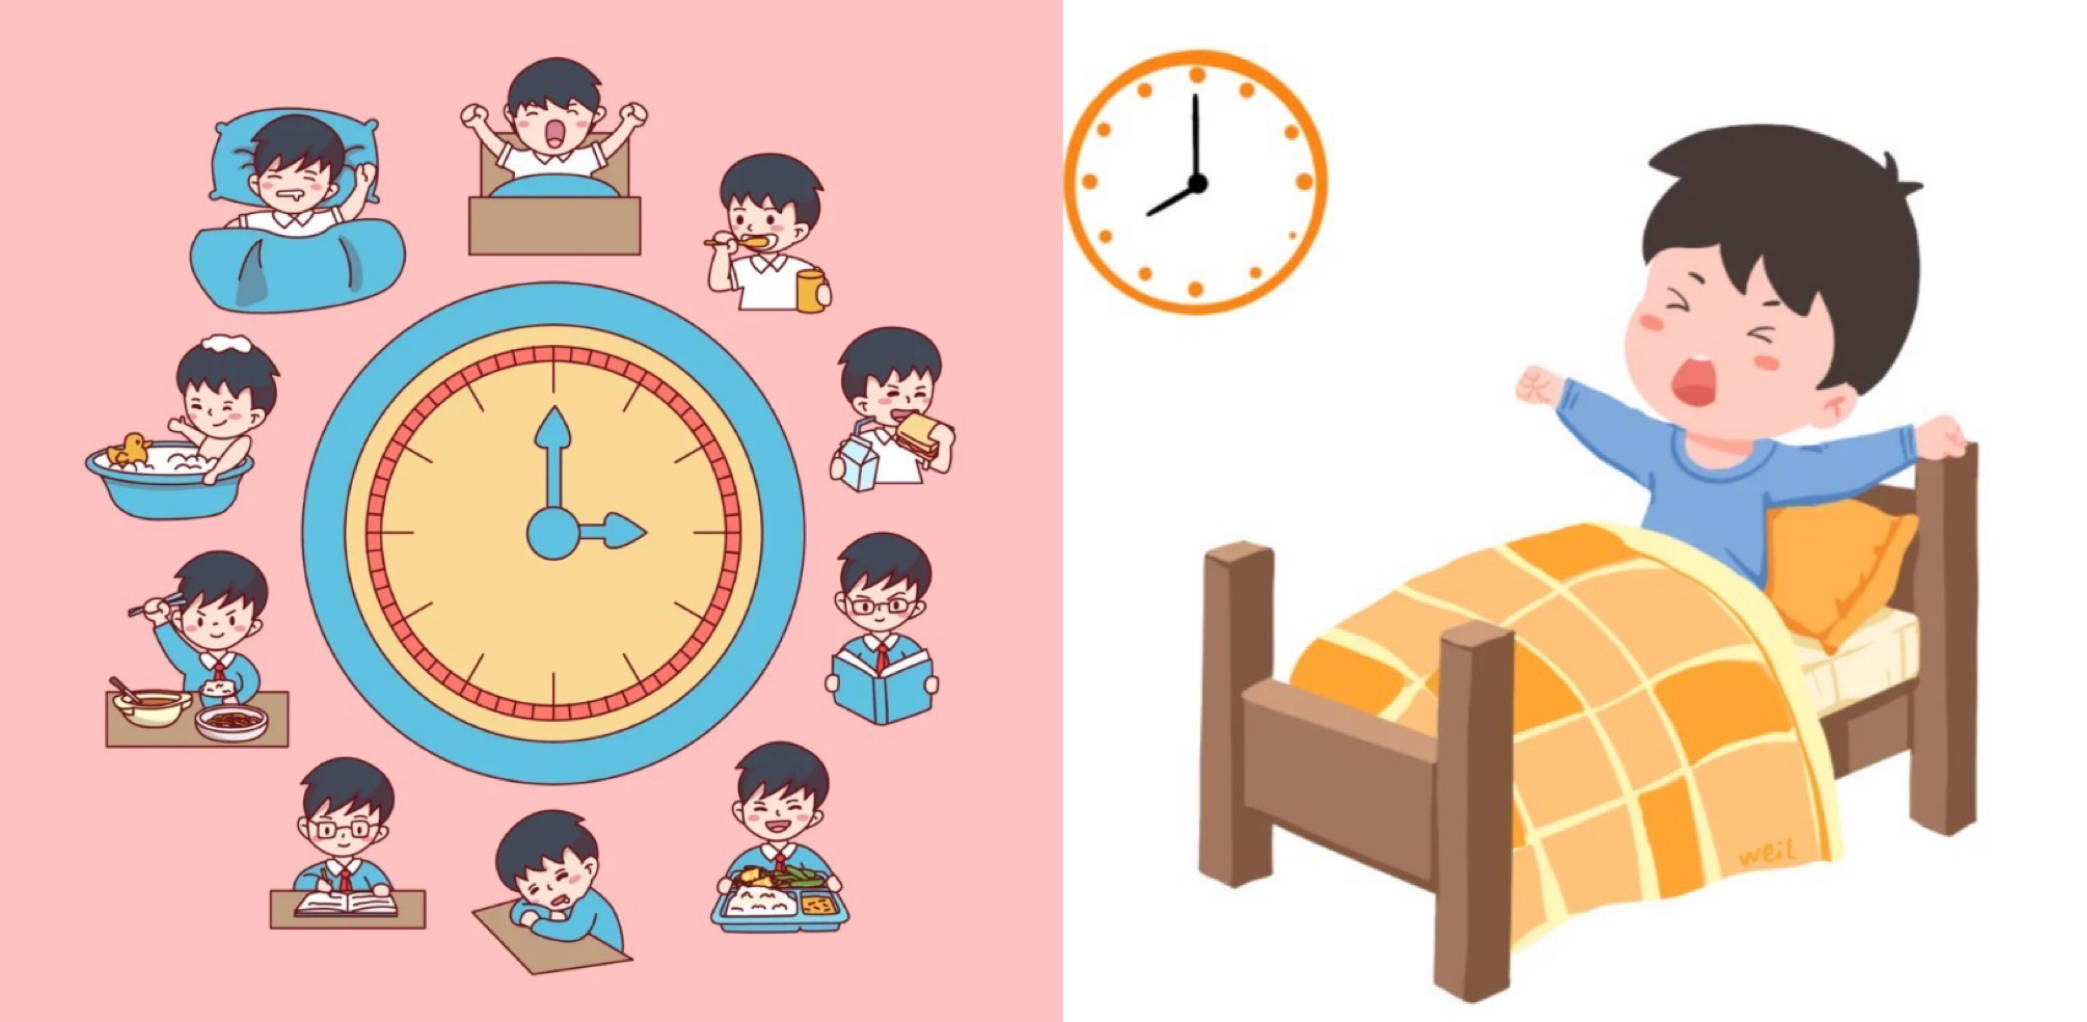 1,制定规律的作息时间表:确保每天都有固定的起床和睡觉时间,帮助身体